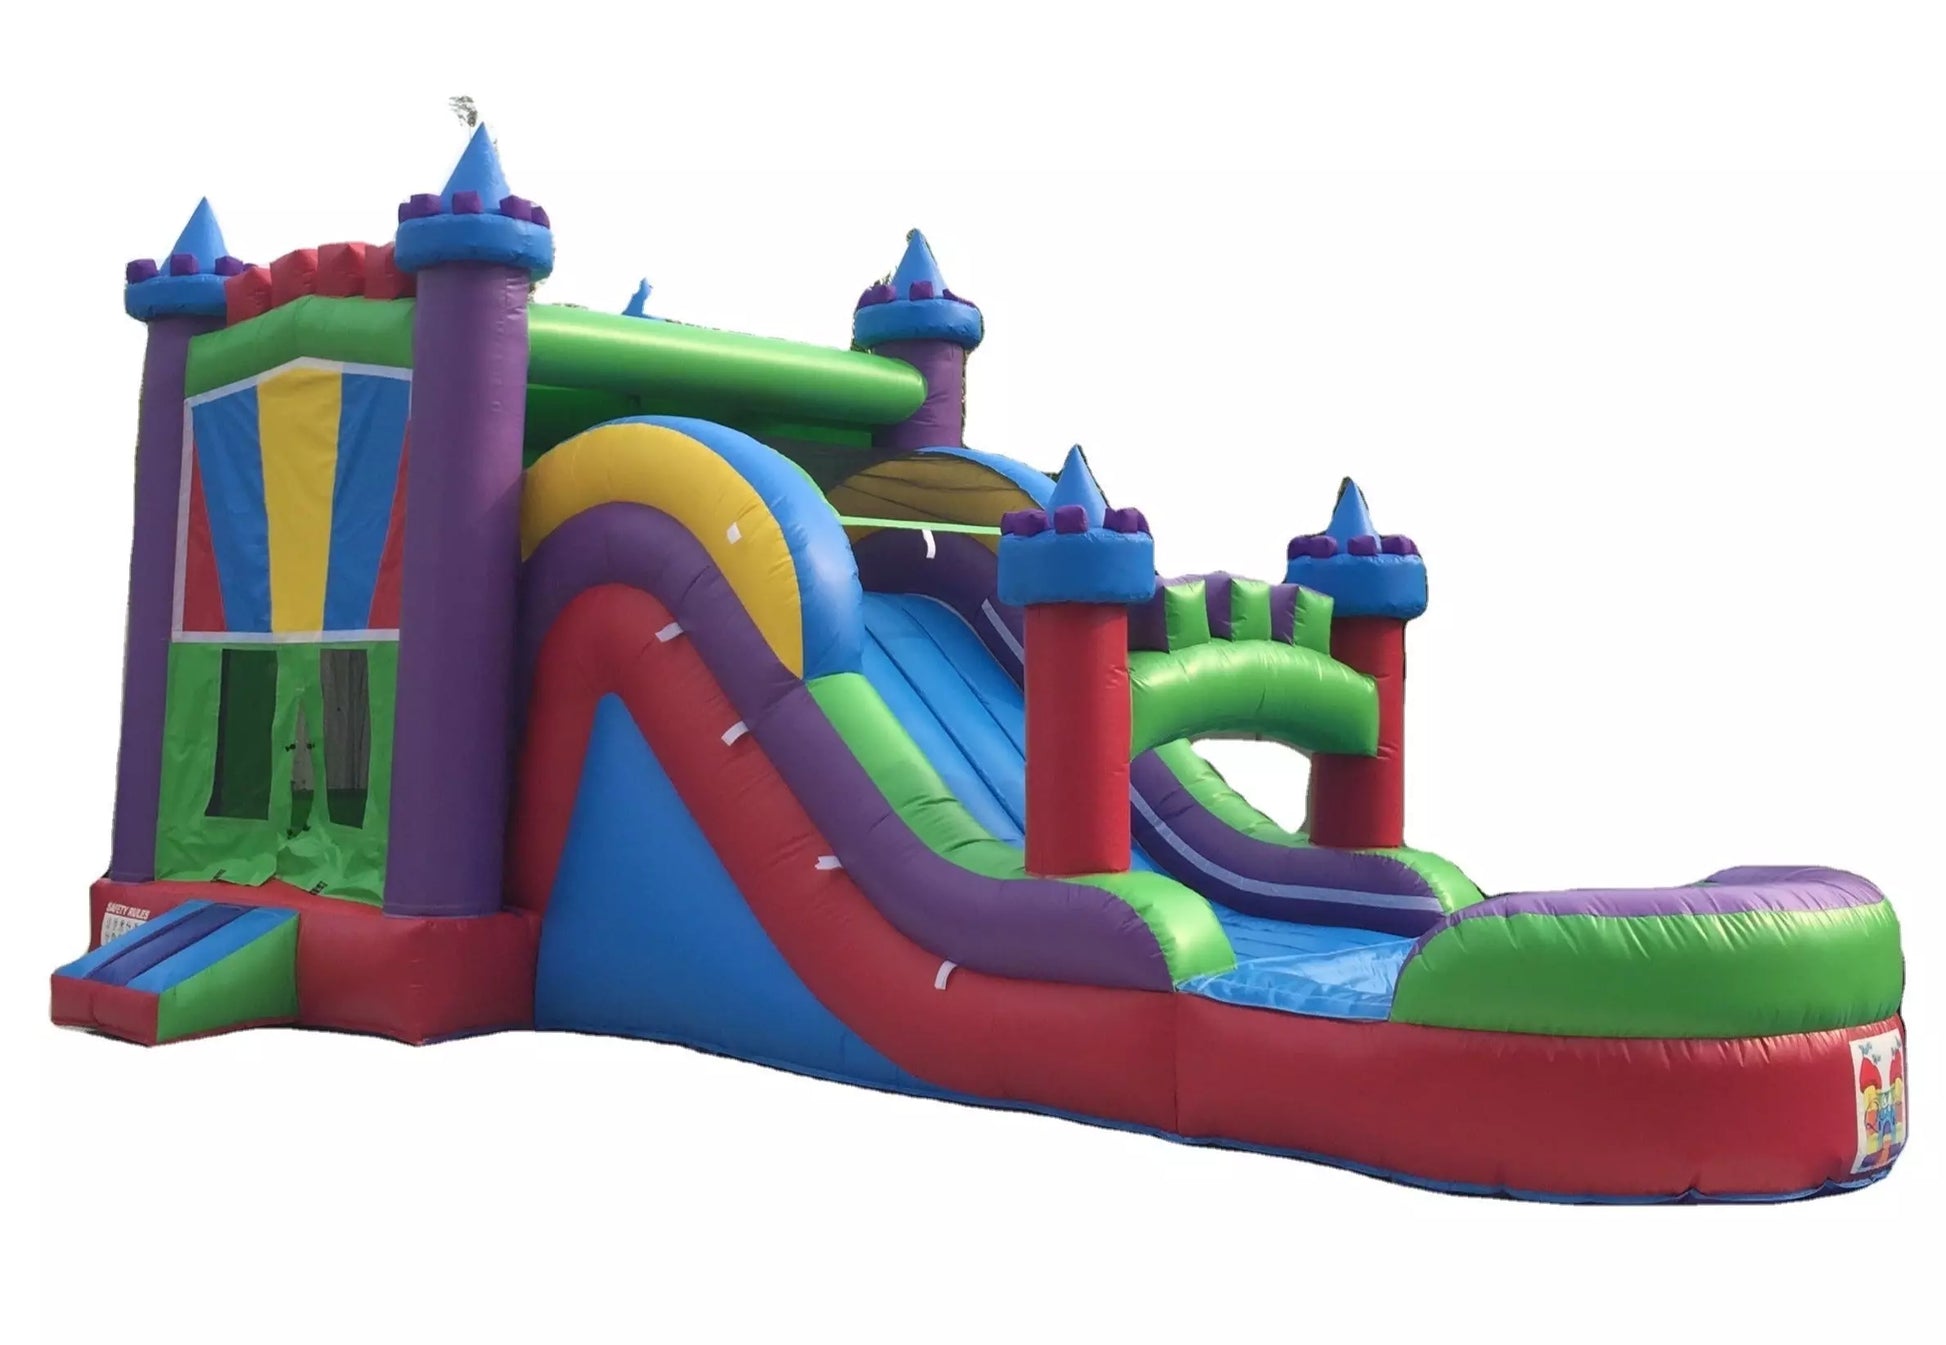 Slide & Castle Jumper Rental